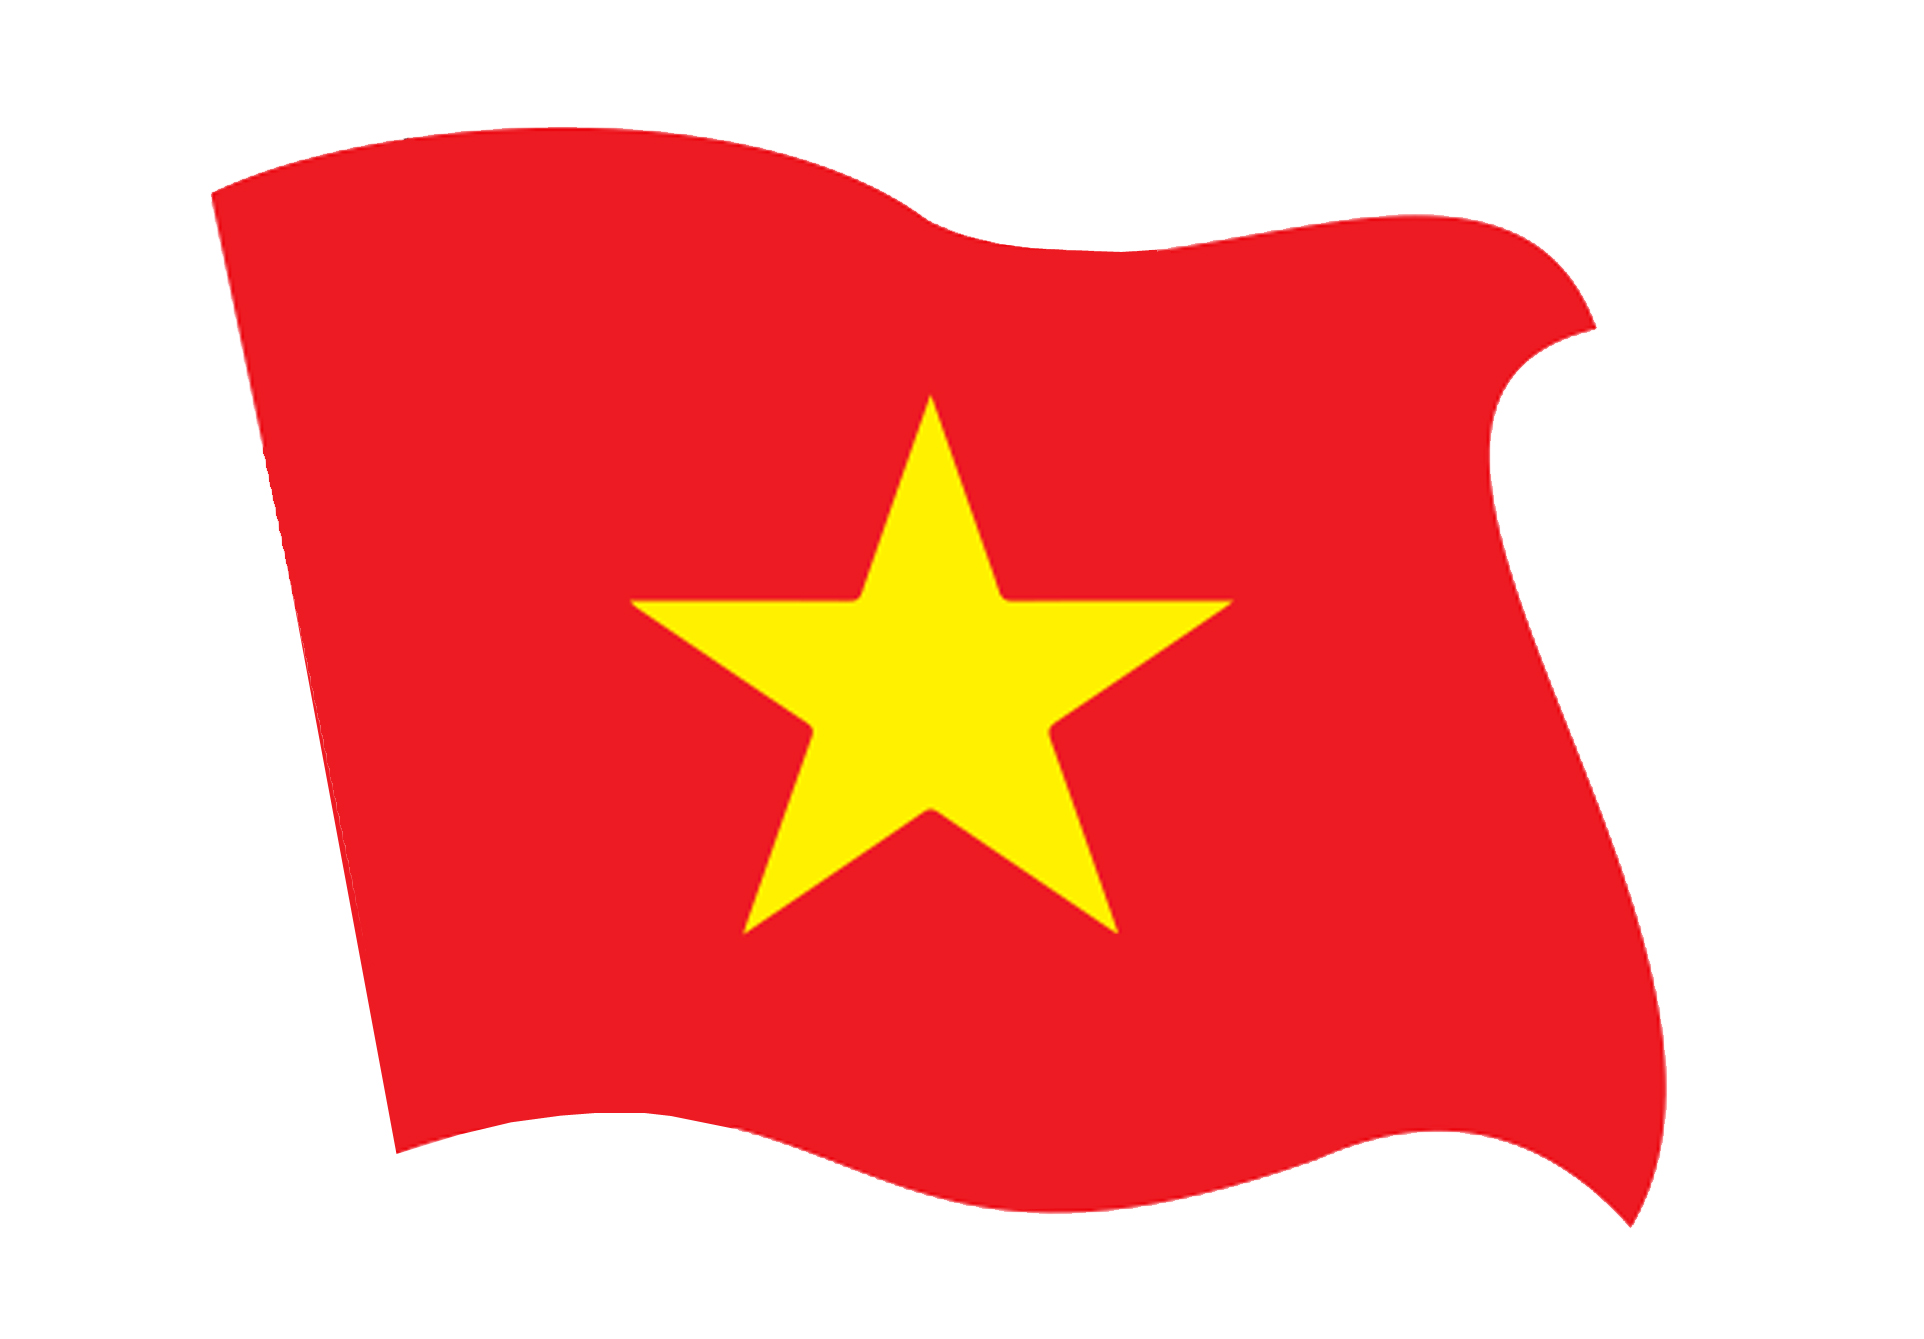 Tem dán lá cờ Việt Nam 2024:
Bạn đang tìm kiếm một sản phẩm đơn giản nhưng mang tính nghĩa vụ như tem dán lá cờ Việt Nam 15cm? Năm 2024, có rất nhiều cửa hàng trực tuyến và ngoại tuyến bán các loại tem dán cờ Việt Nam với chất lượng và giá cả đa dạng. Đừng ngần ngại trang trí cho những chiếc xe của bạn hoặc văn phòng làm việc với các tem dán cờ Việt Nam đầy ý nghĩa này.